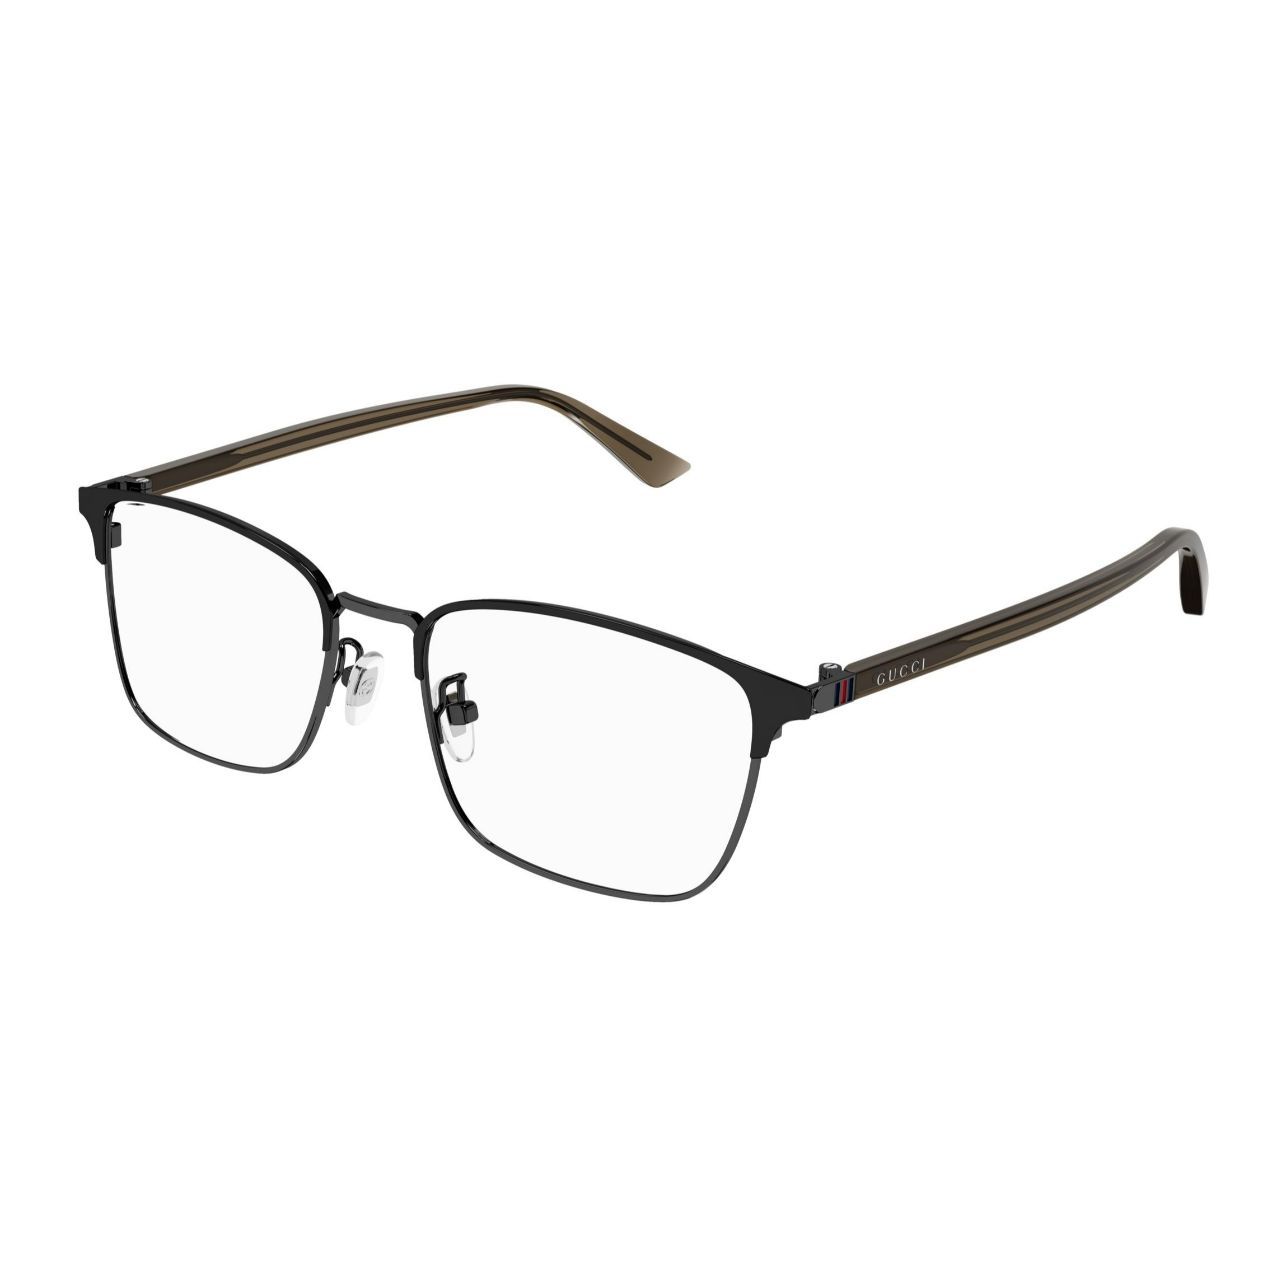 GG1124OA Square Eyeglasses 3 - size  55